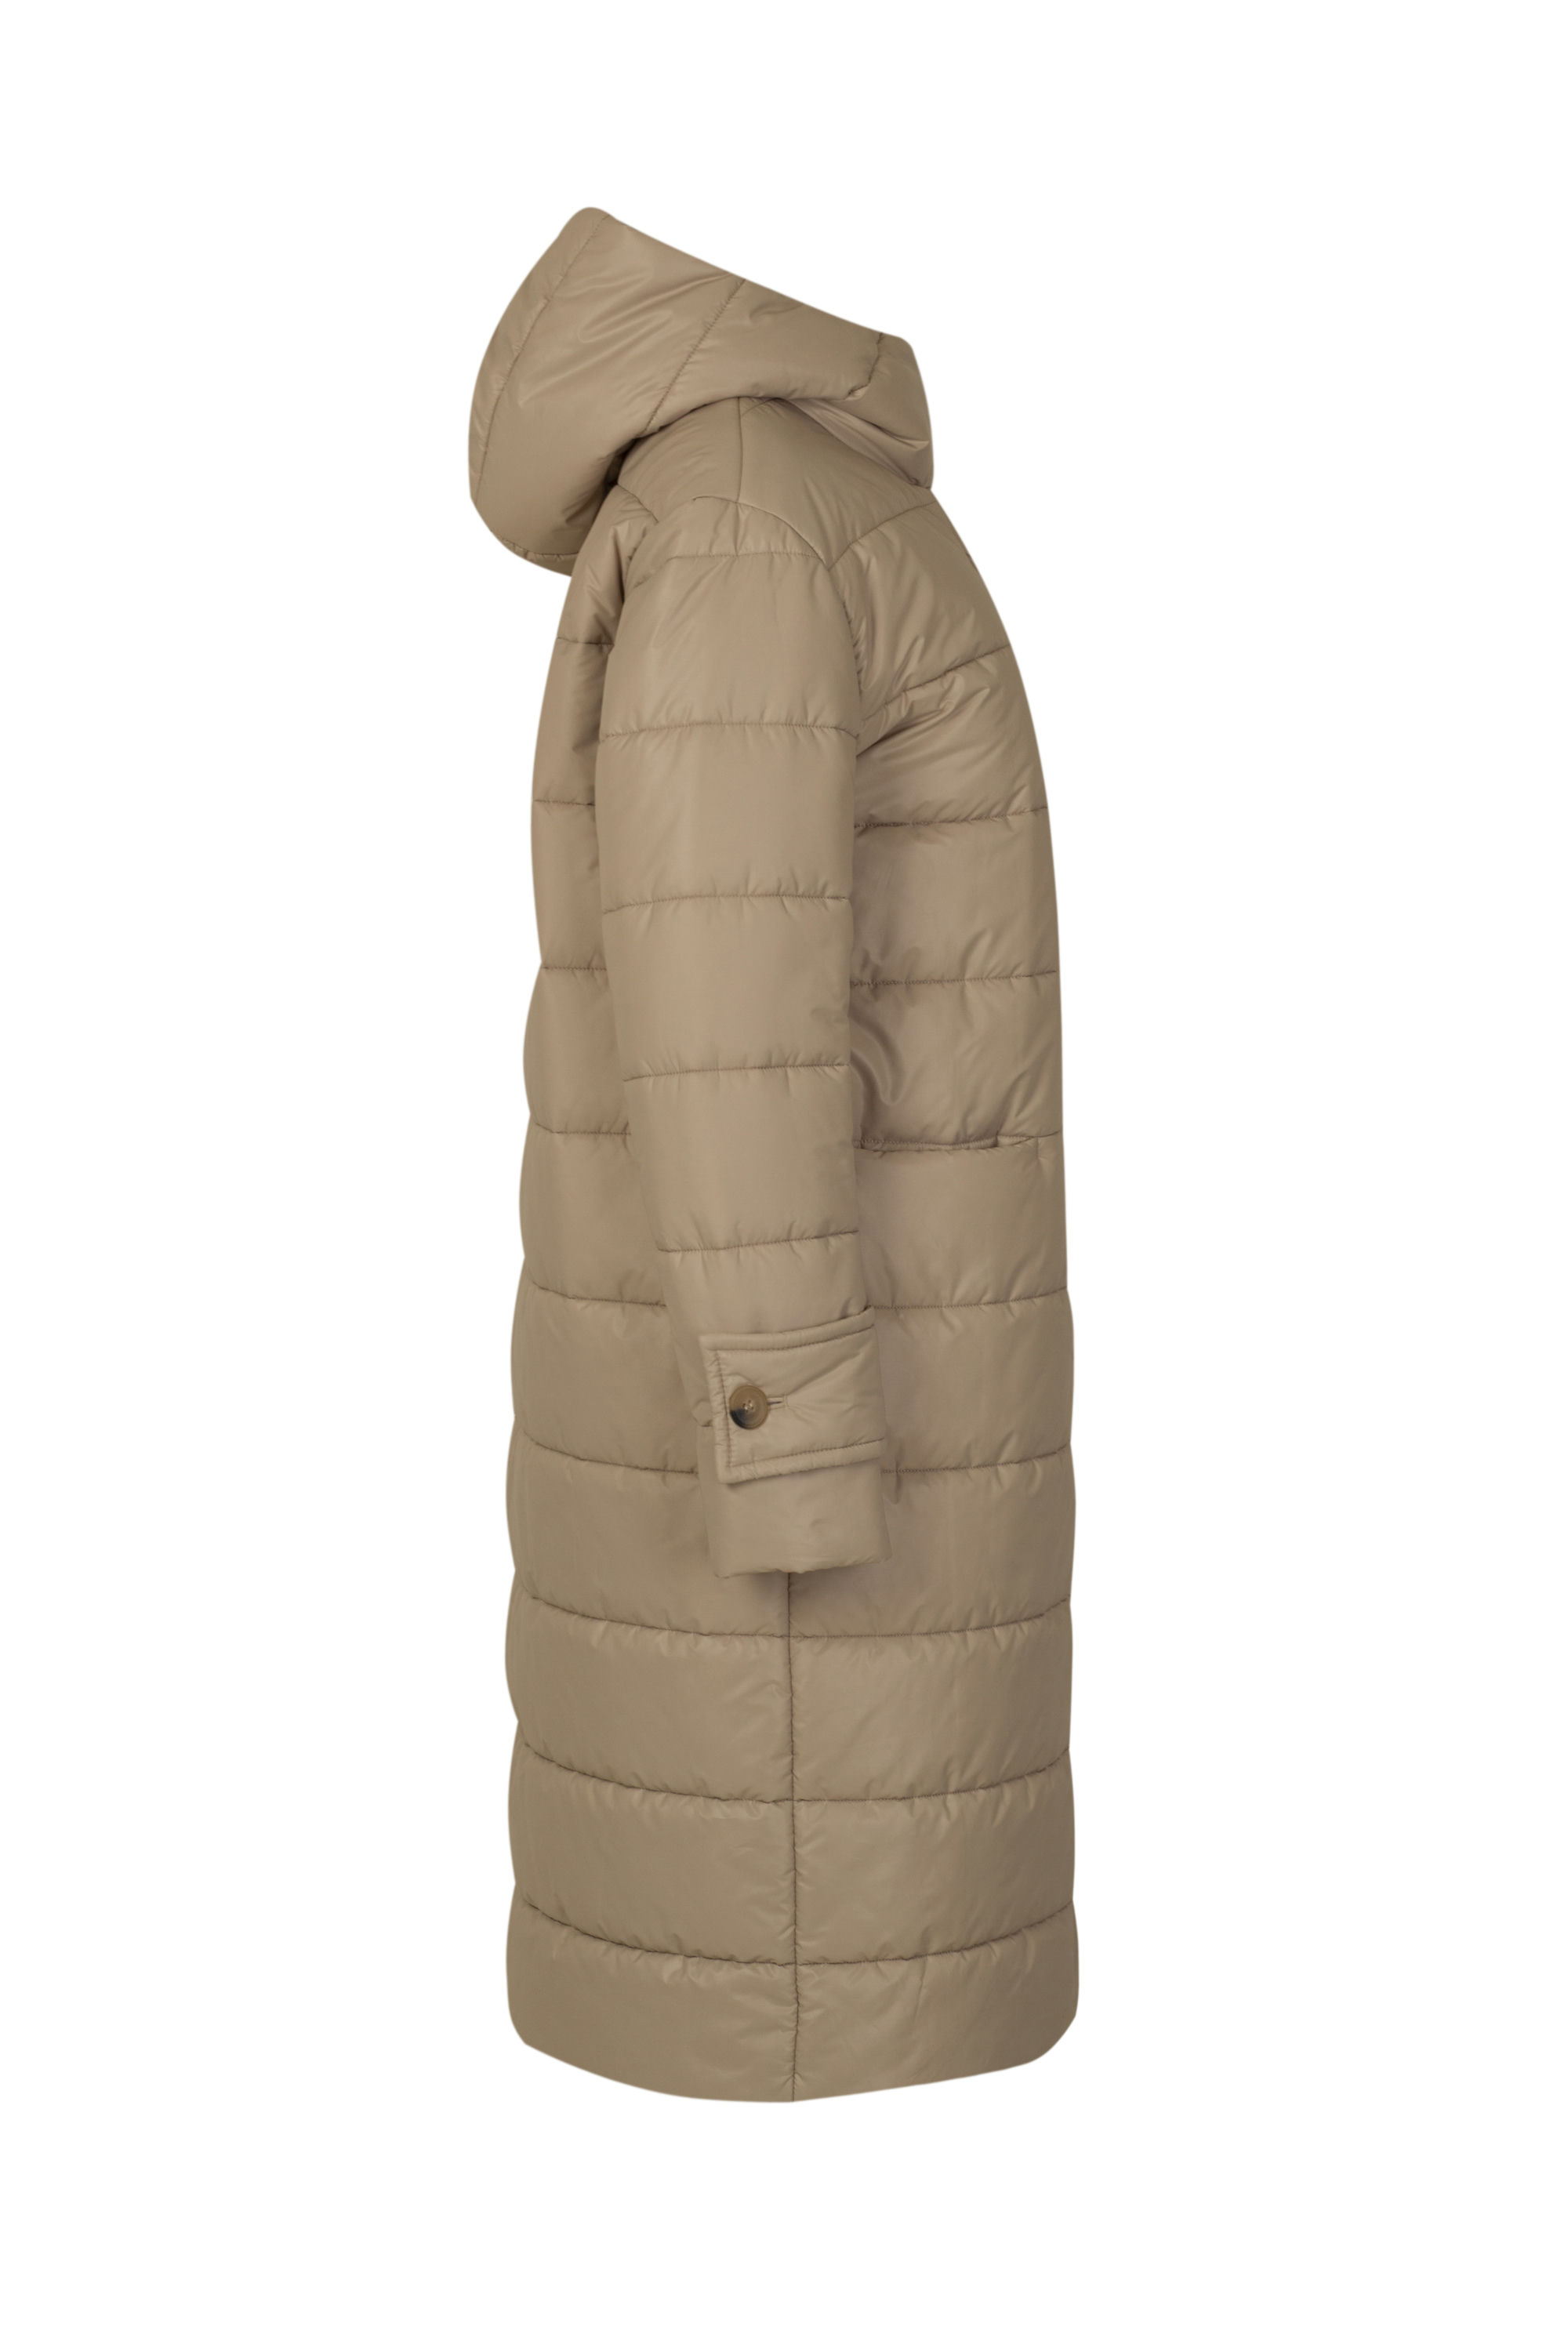 Пальто женское плащевое утепленное 5-13059-1. Фото 2.